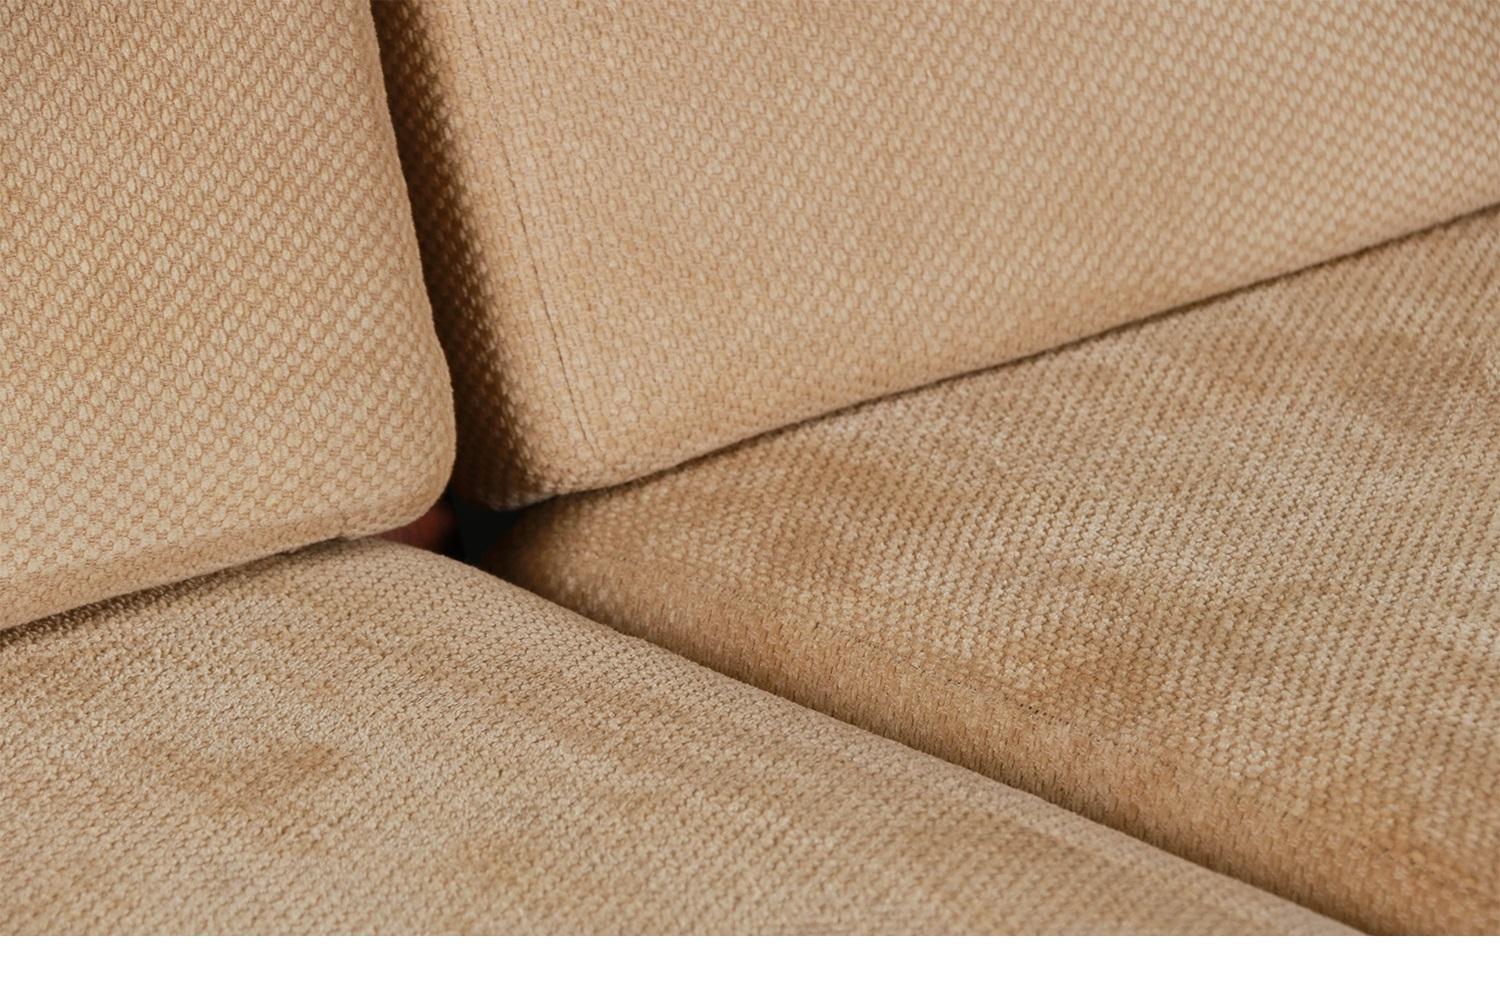 Upholstery Domino Mobler Mid Century Teak Upholstered Sofa Tarm Stole OG Mobelfabrik Style